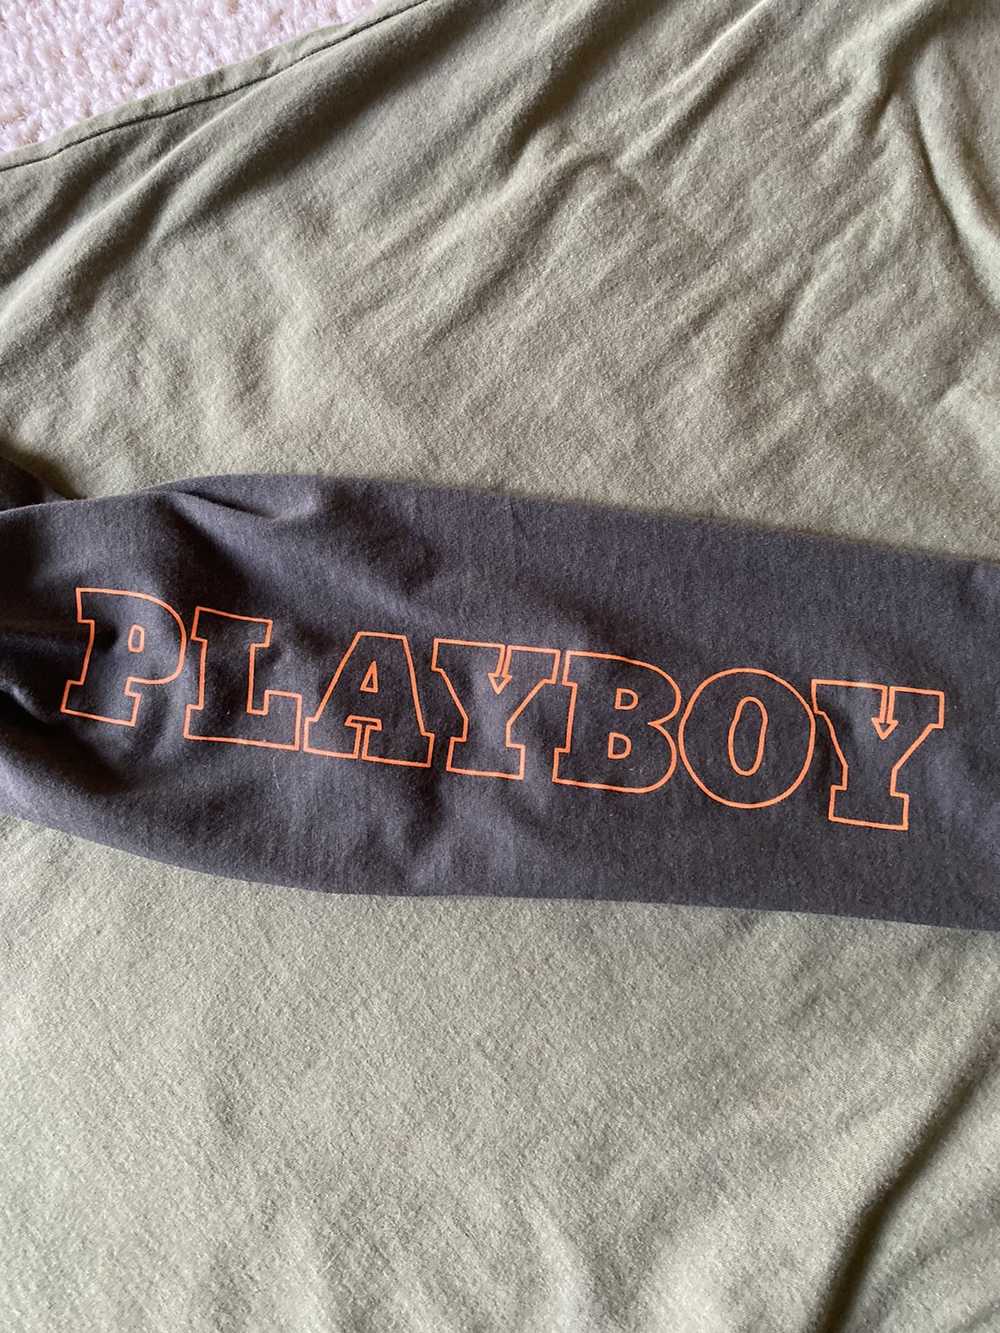 Playboy Playboy long sleeve tee - image 5